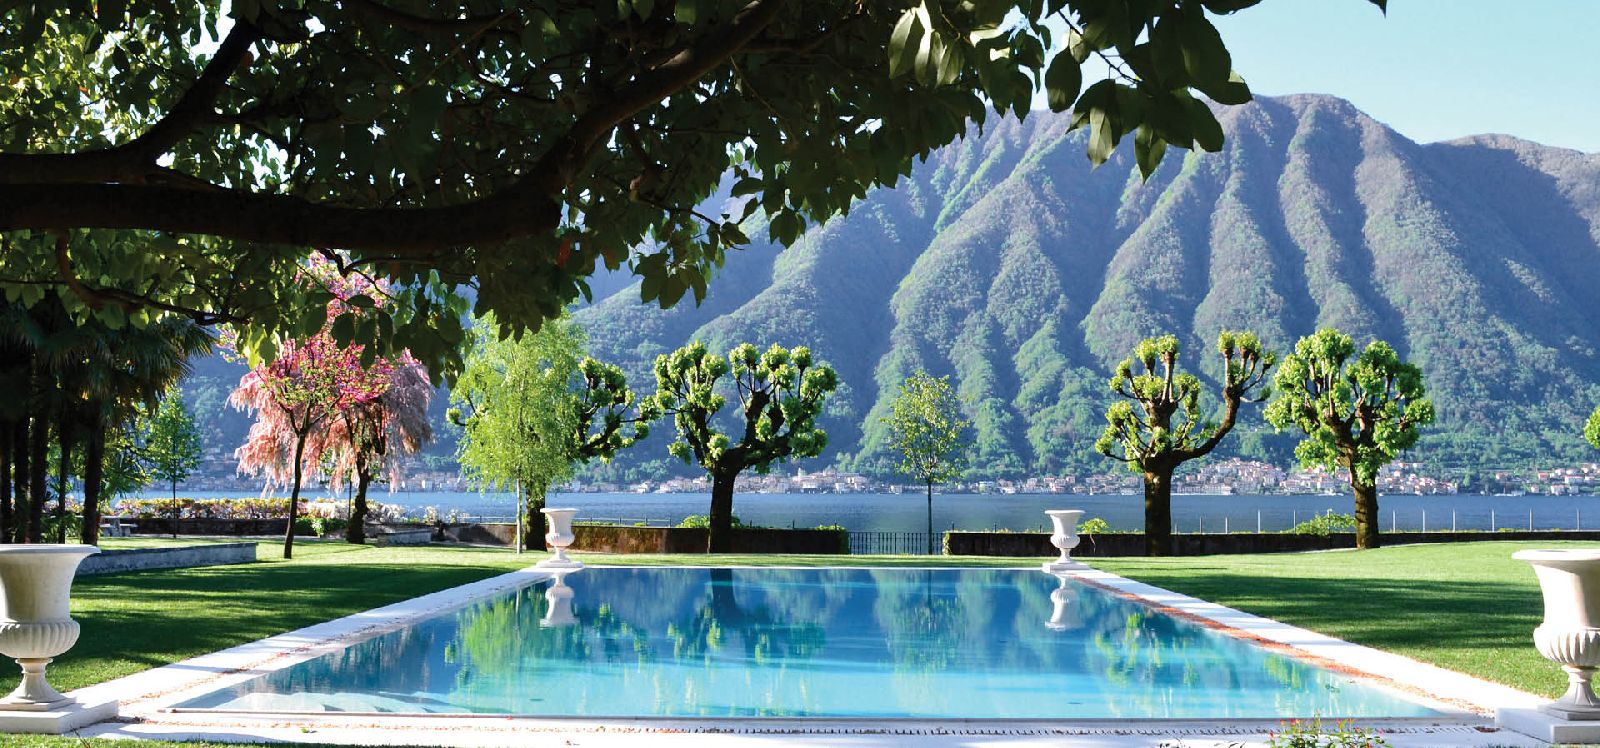 Outdoor heated pool with lake views at Villa Balbiano Lake Como Italy